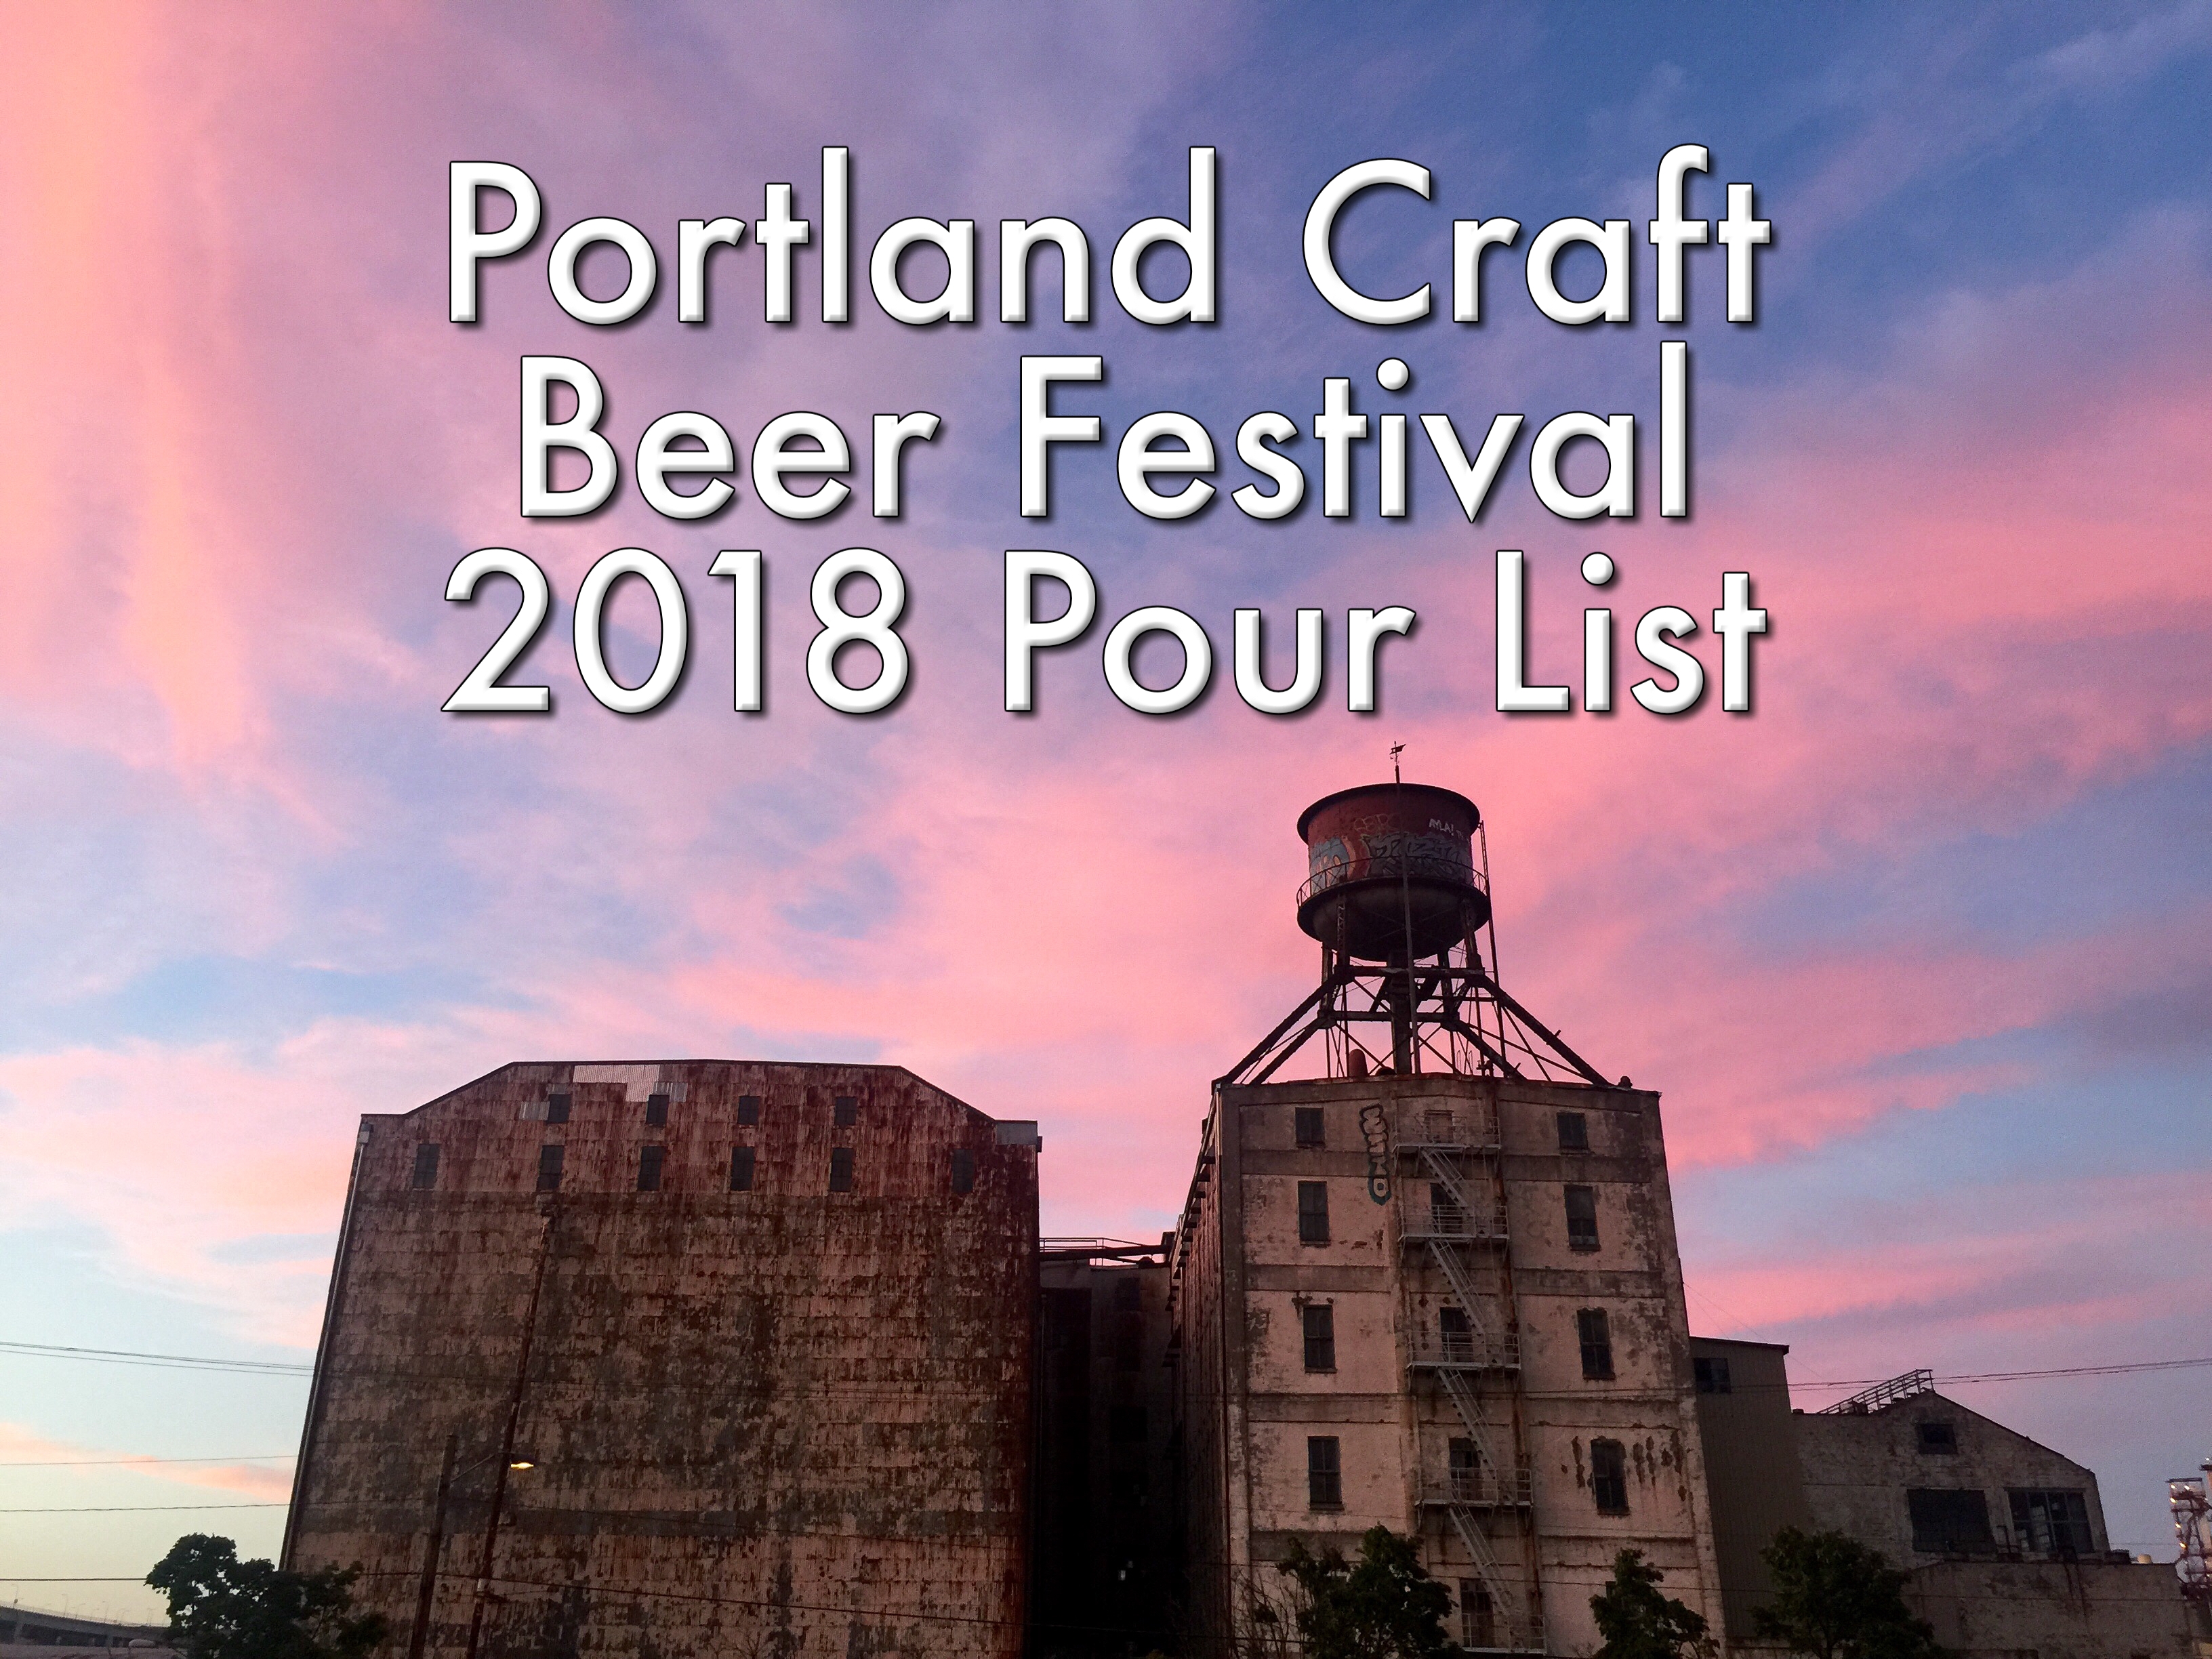 Portland Craft Beer Festival 2018 Preview - Portland Beer Podcast episode 72 by Steven Shomler-116.jpg